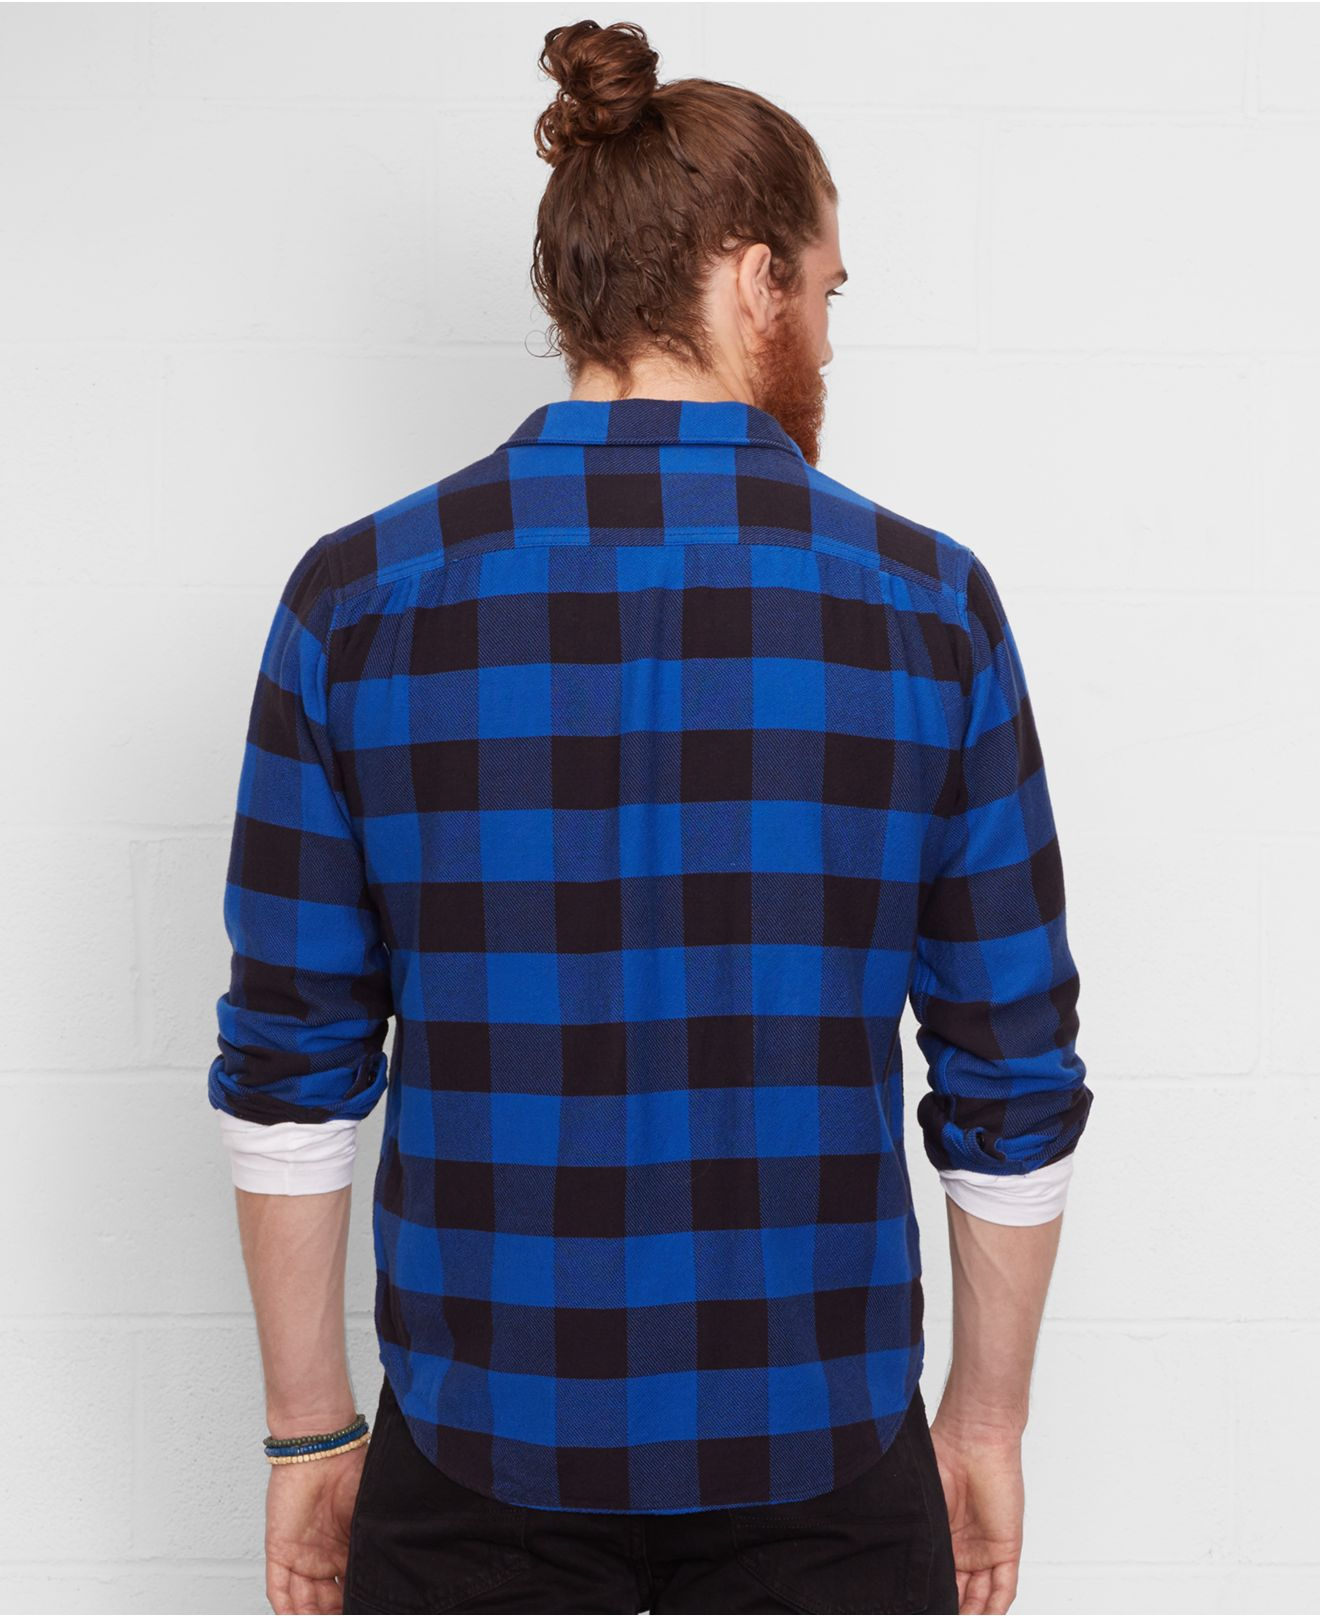 Denim & Supply Ralph Lauren Plaid Flannel Shirt in Blue for Men - Lyst